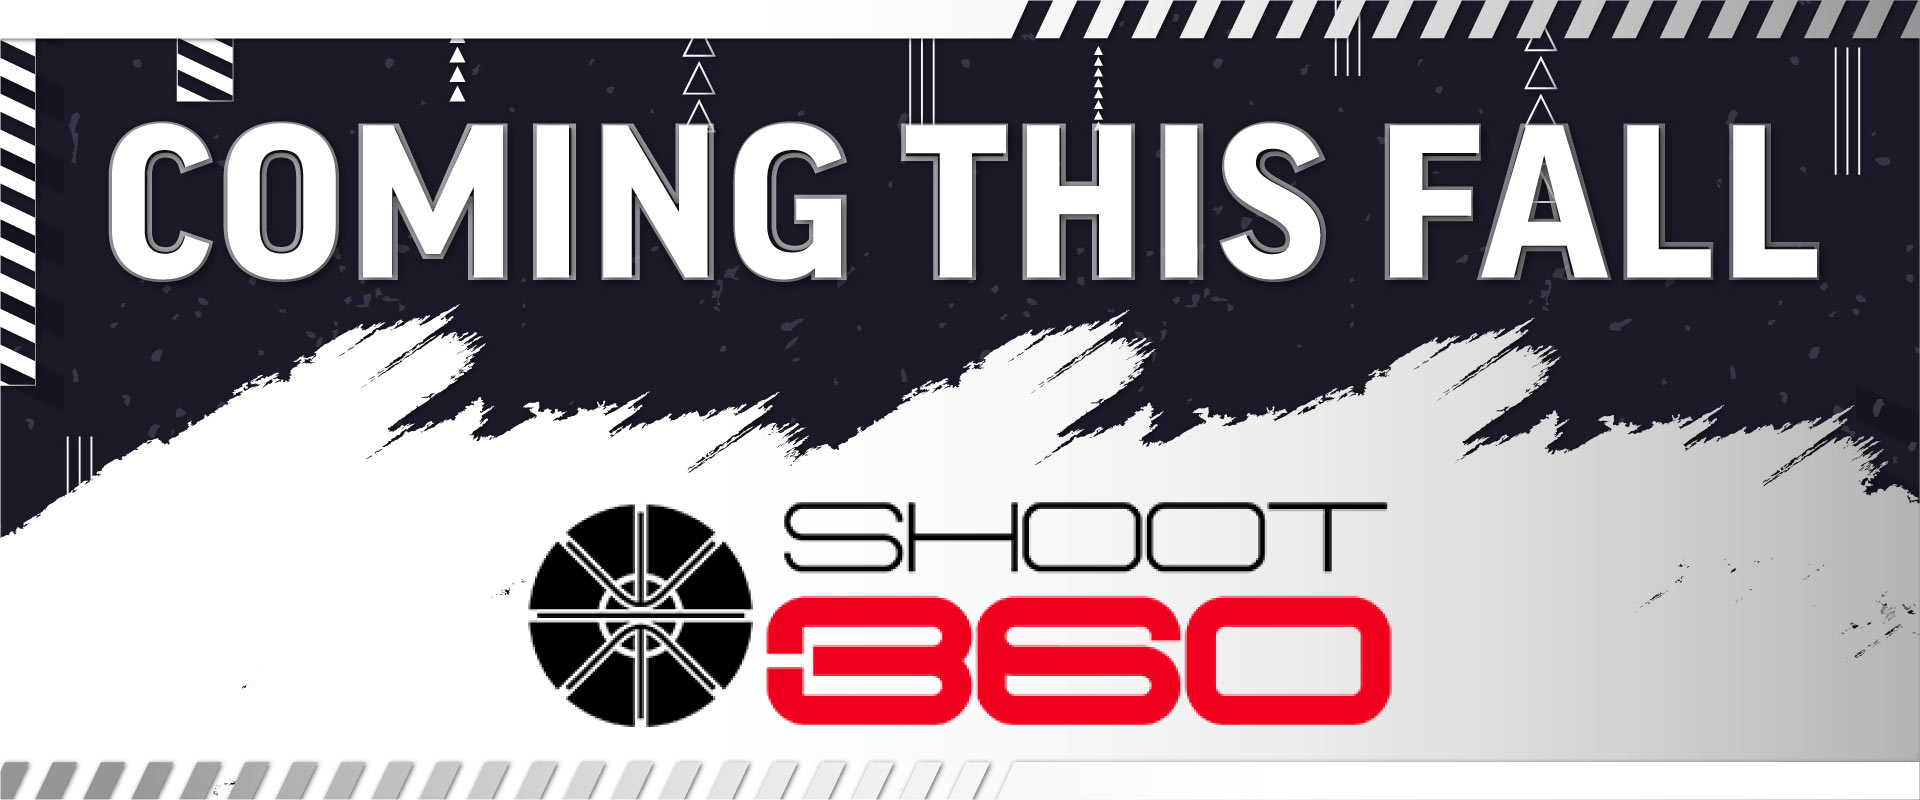 Shoot 360 Coming Soon